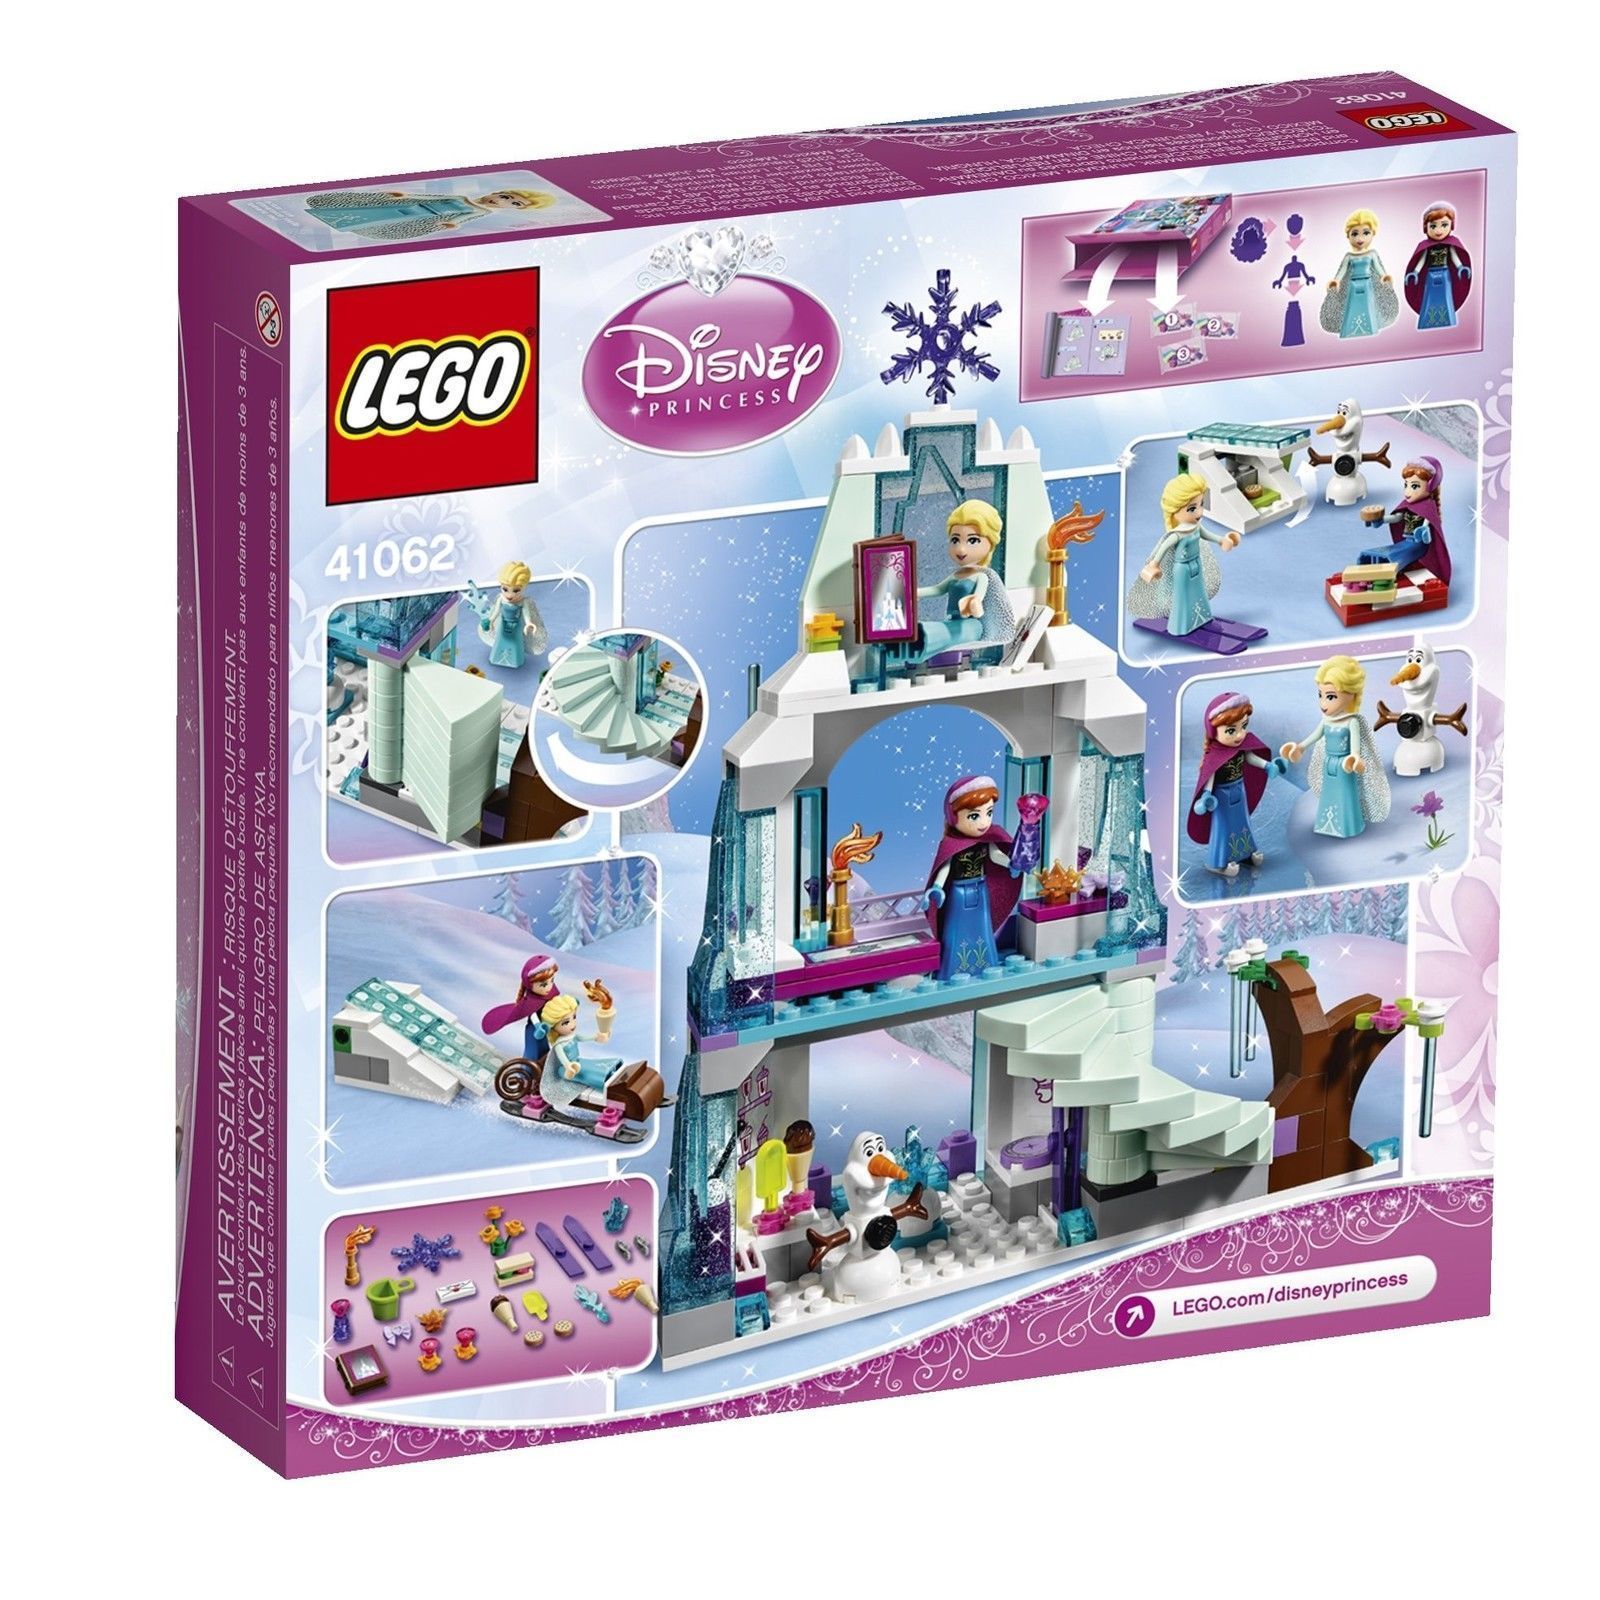 LEGO Disney Princess Frozen Elsa's Sparkling Ice Castle Building Set 41062 New - LEGO Complete 